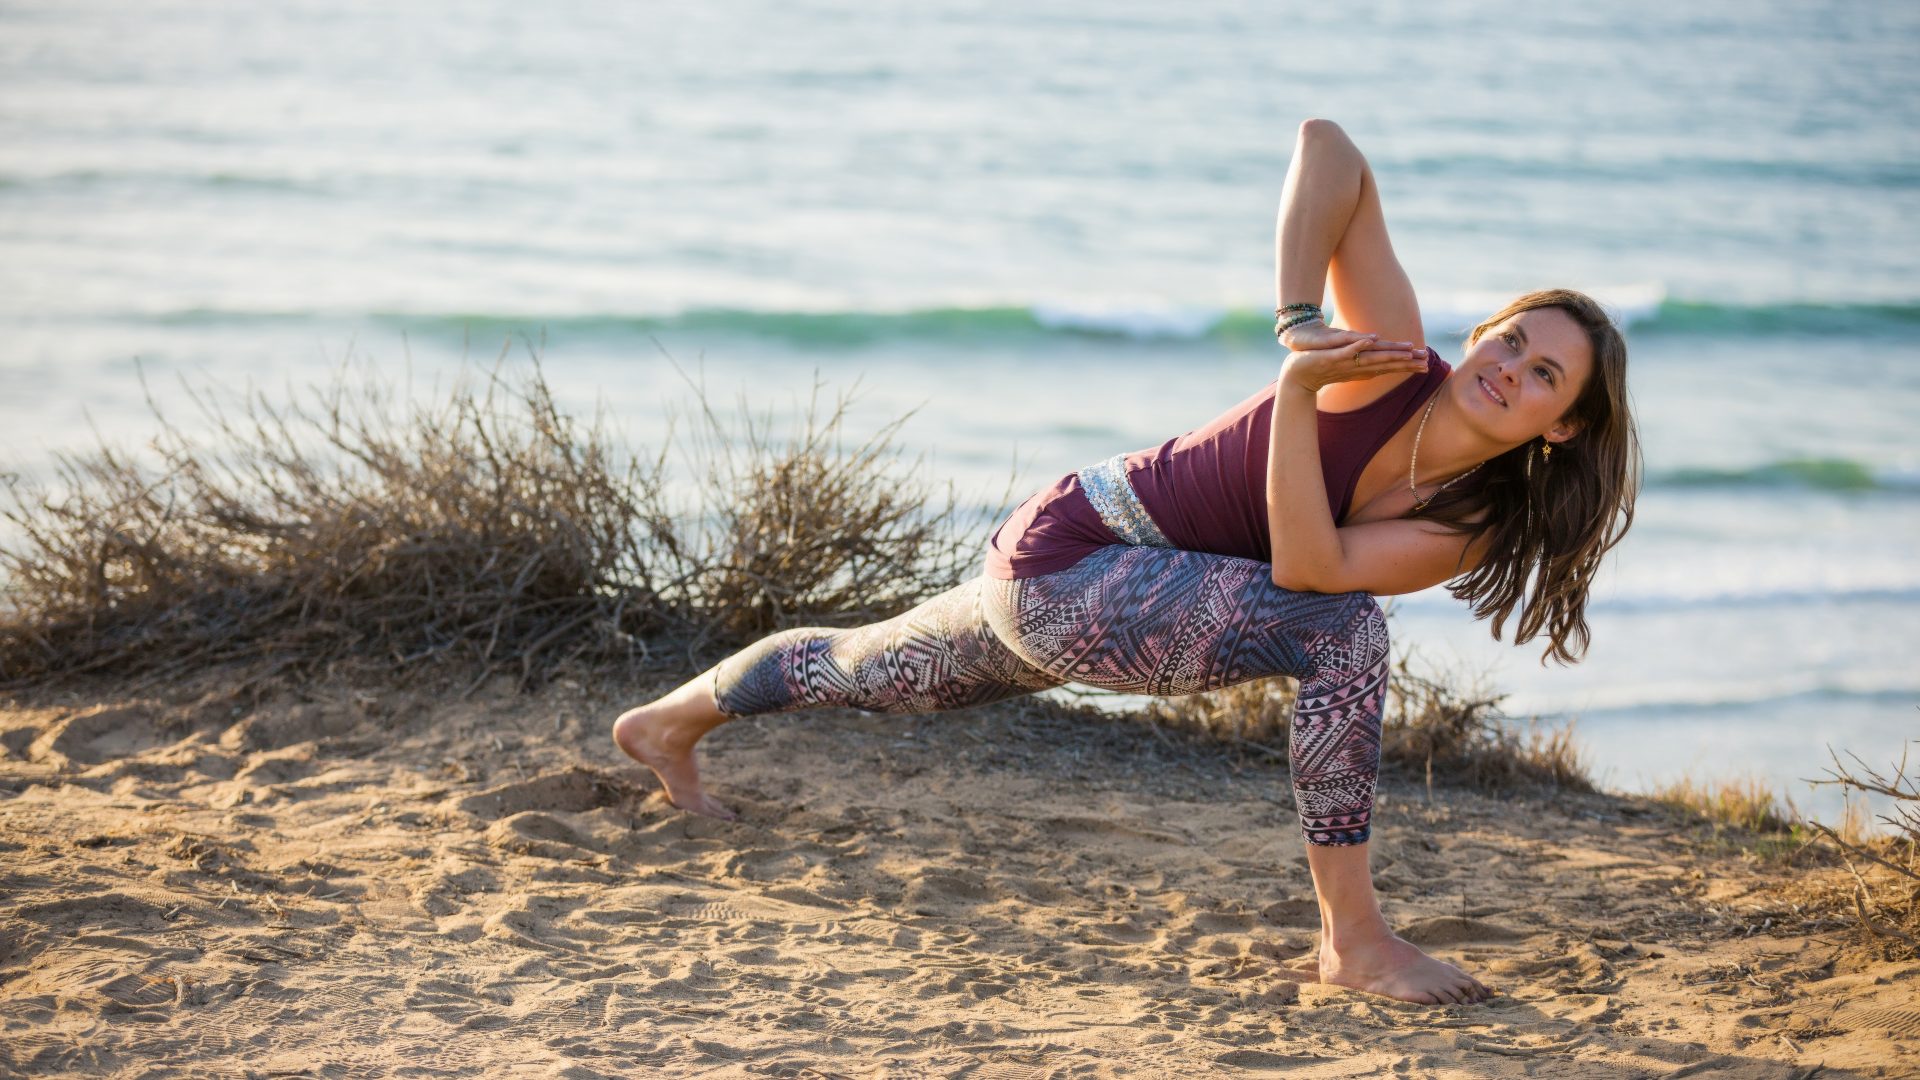 Kvinde på en strand, som poserer i en yogastilling. Iklædt blåt og lilla tøj med en masse mønstre på hendes tights. I yogastillingen ser hun op mod himlen og smiler.